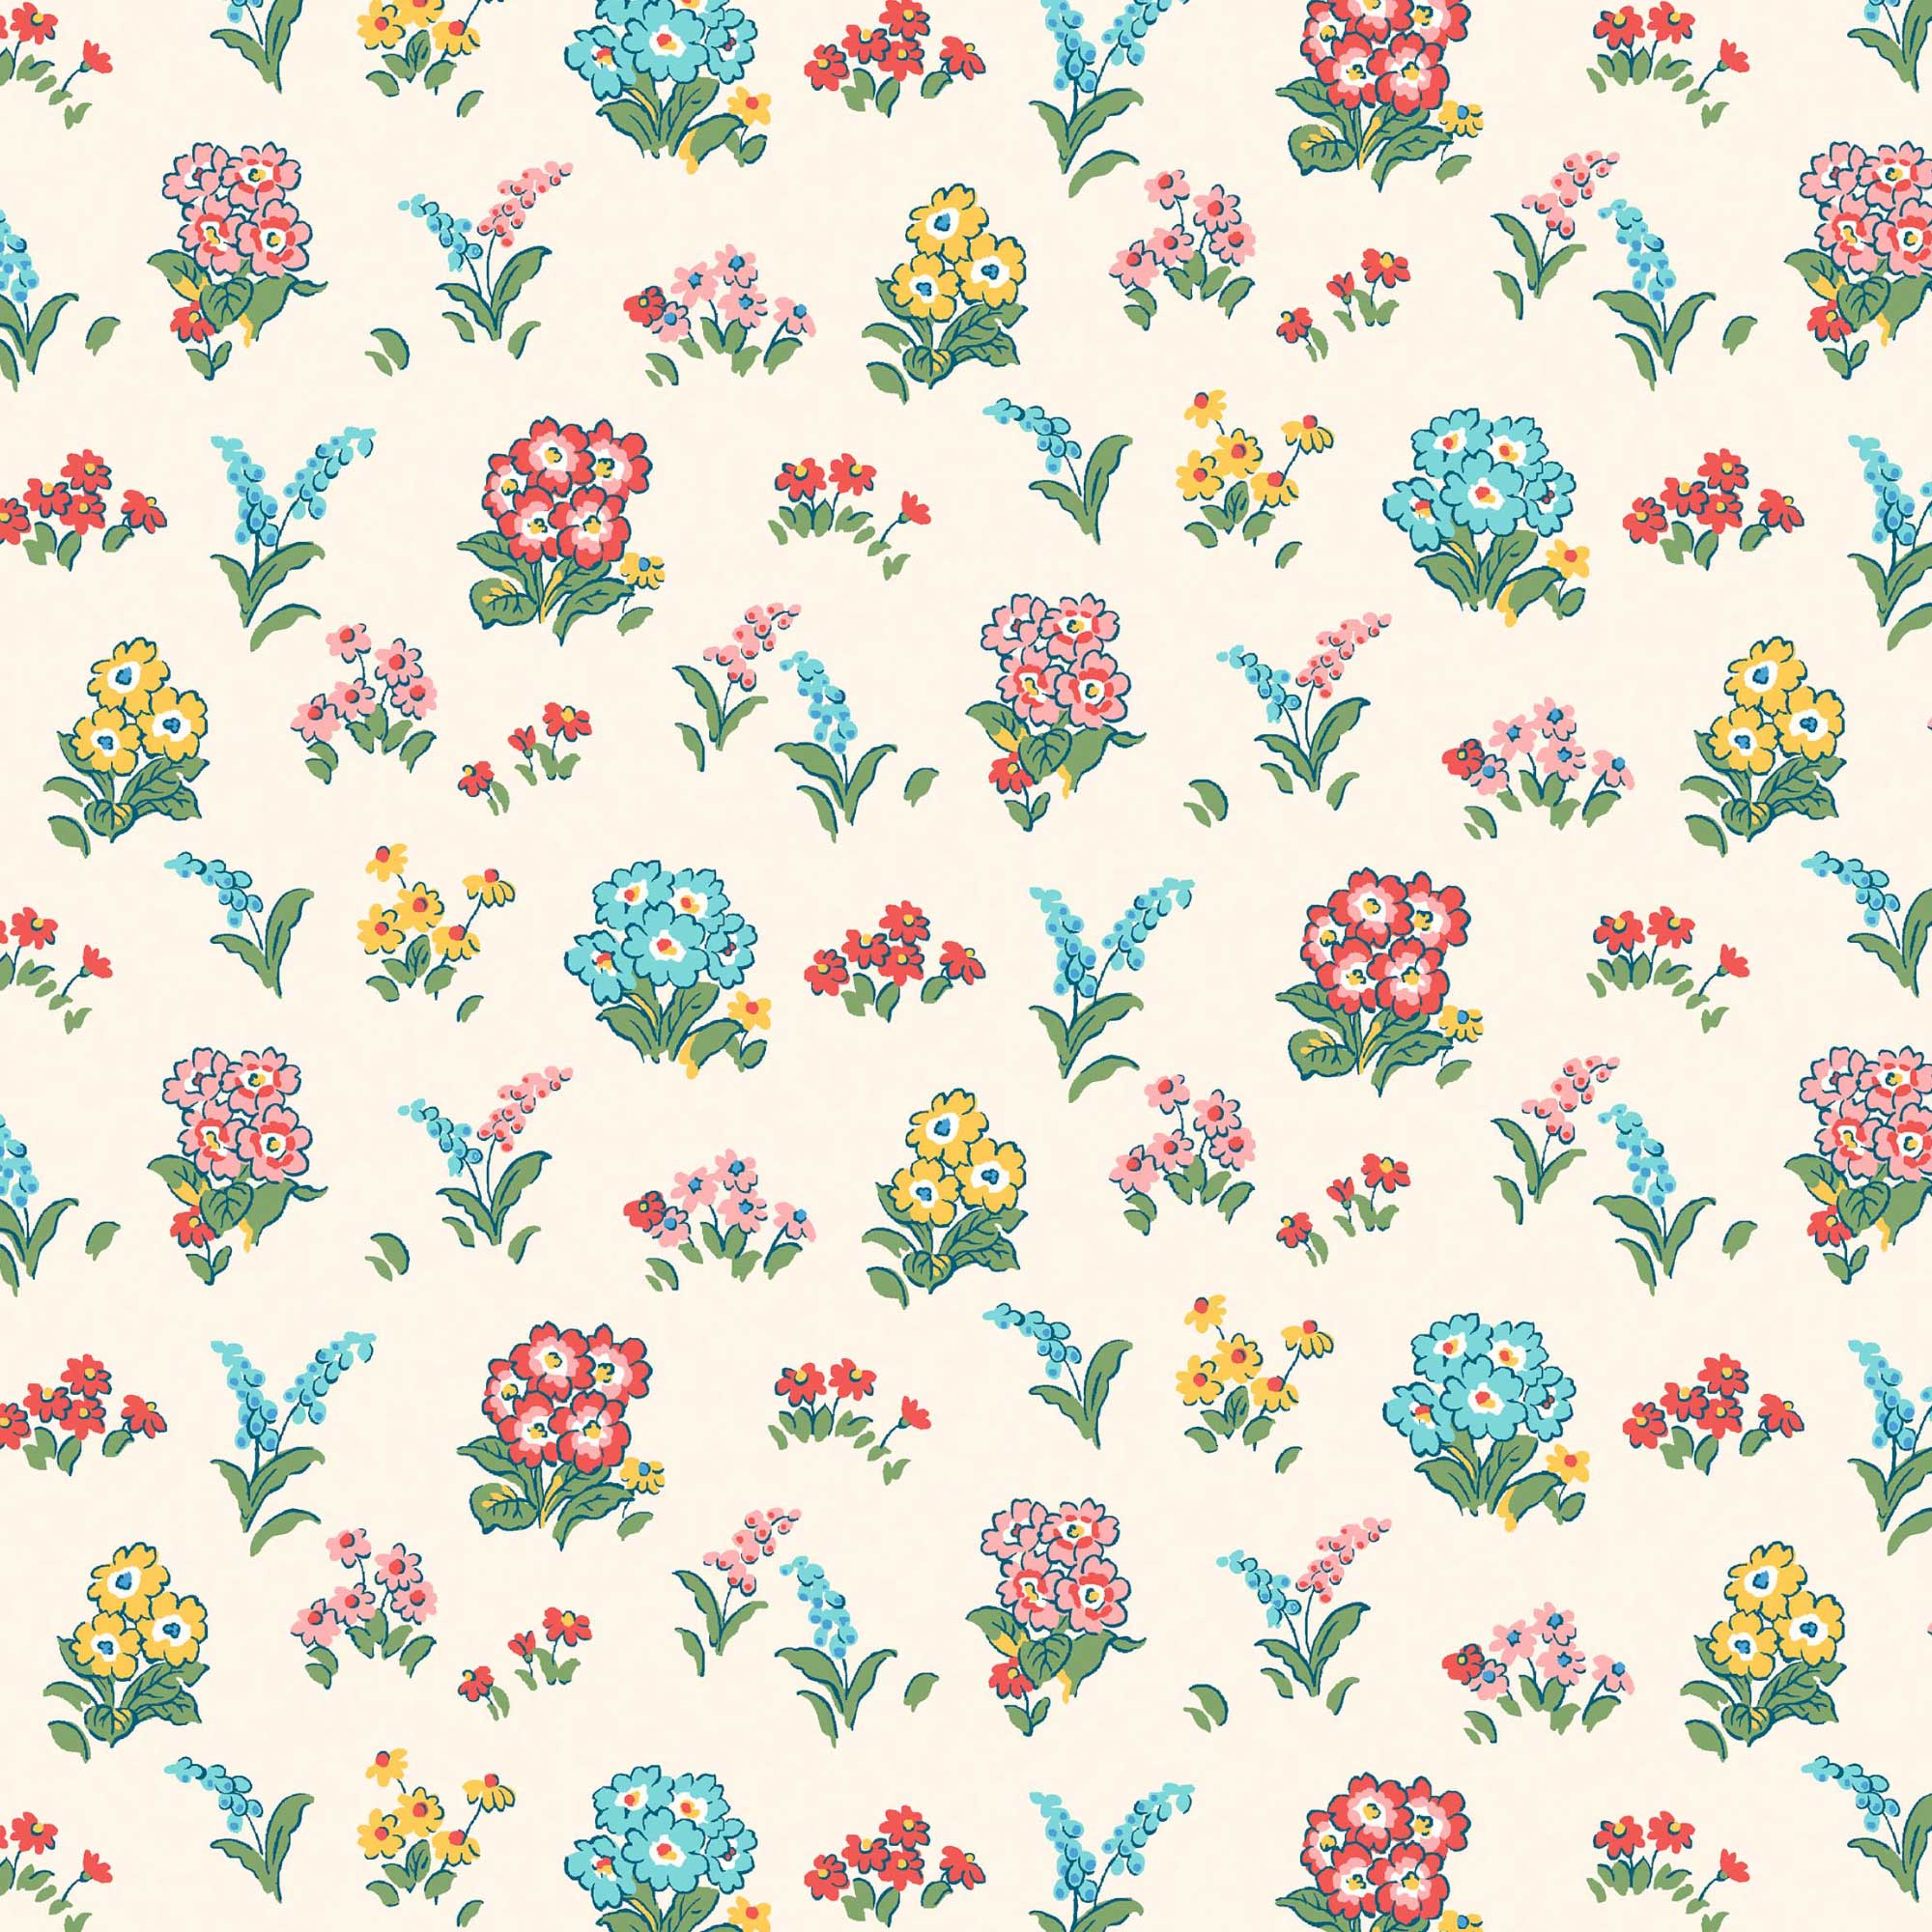 Kensington Garden 5963A - Flower Show Midsummer - Liberty Quilting Cotton